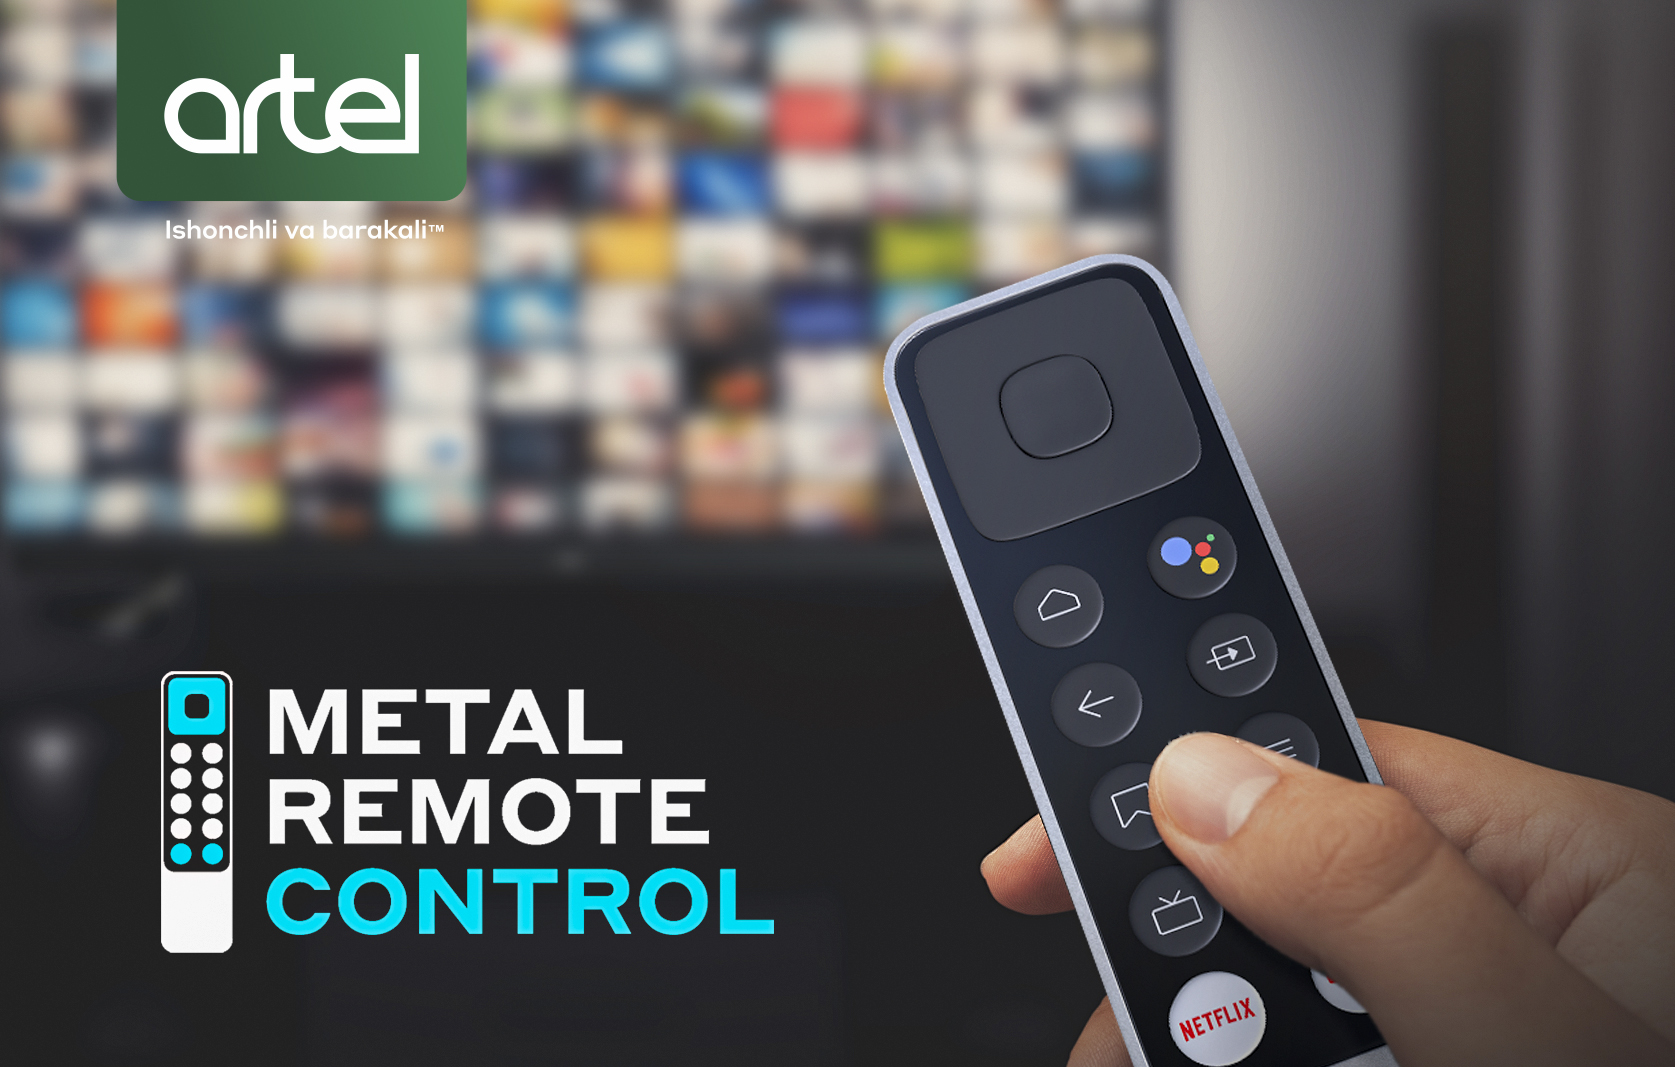 Metal case remote control